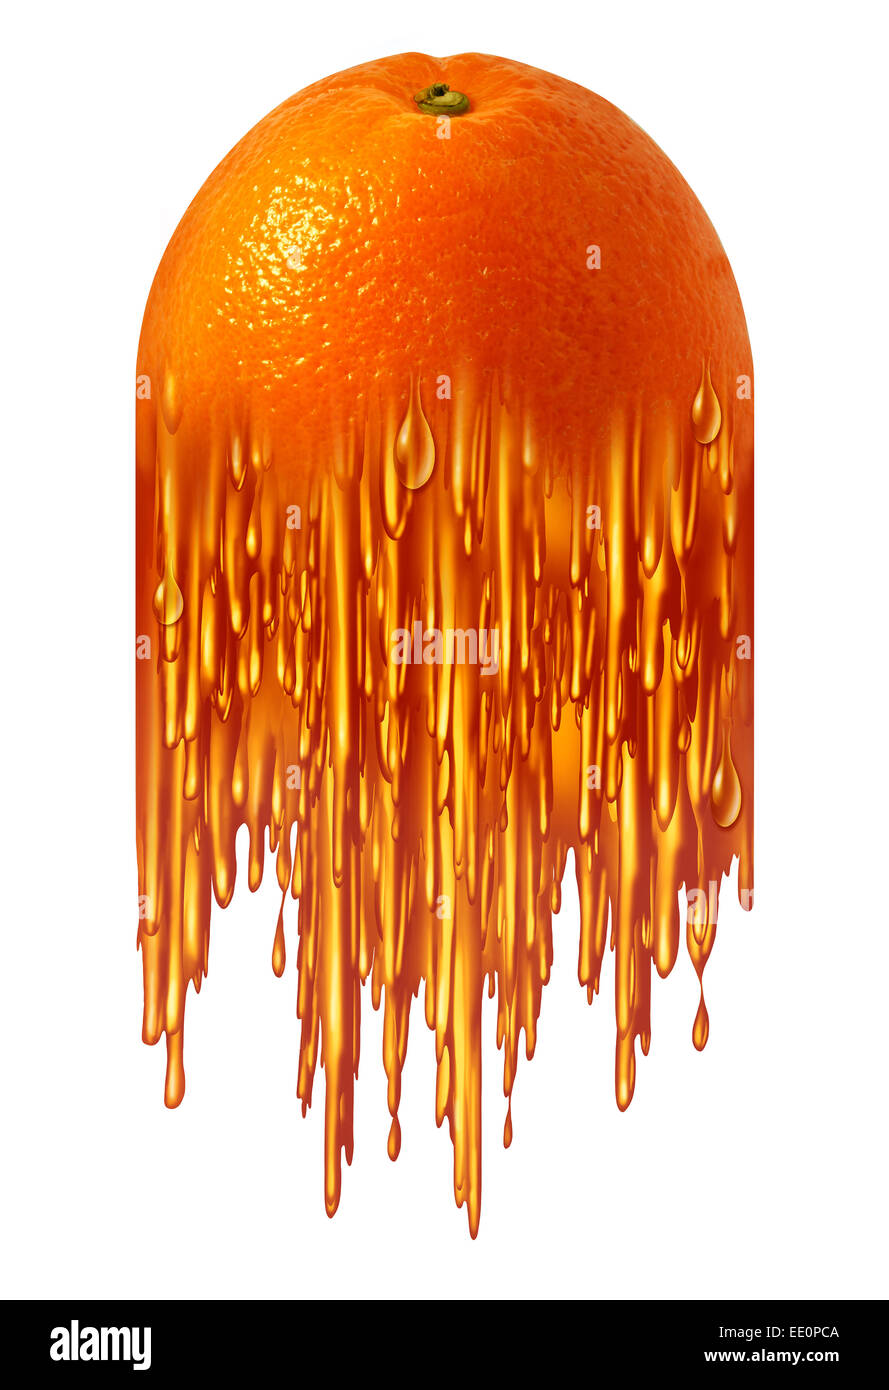 Jus d'orange comme symbole un fruit tropical se transforment en liquide sucré comme une icône de la nourriture pour le petit déjeuner boissons ou nutritios sain ingrédient alimentaire. Banque D'Images